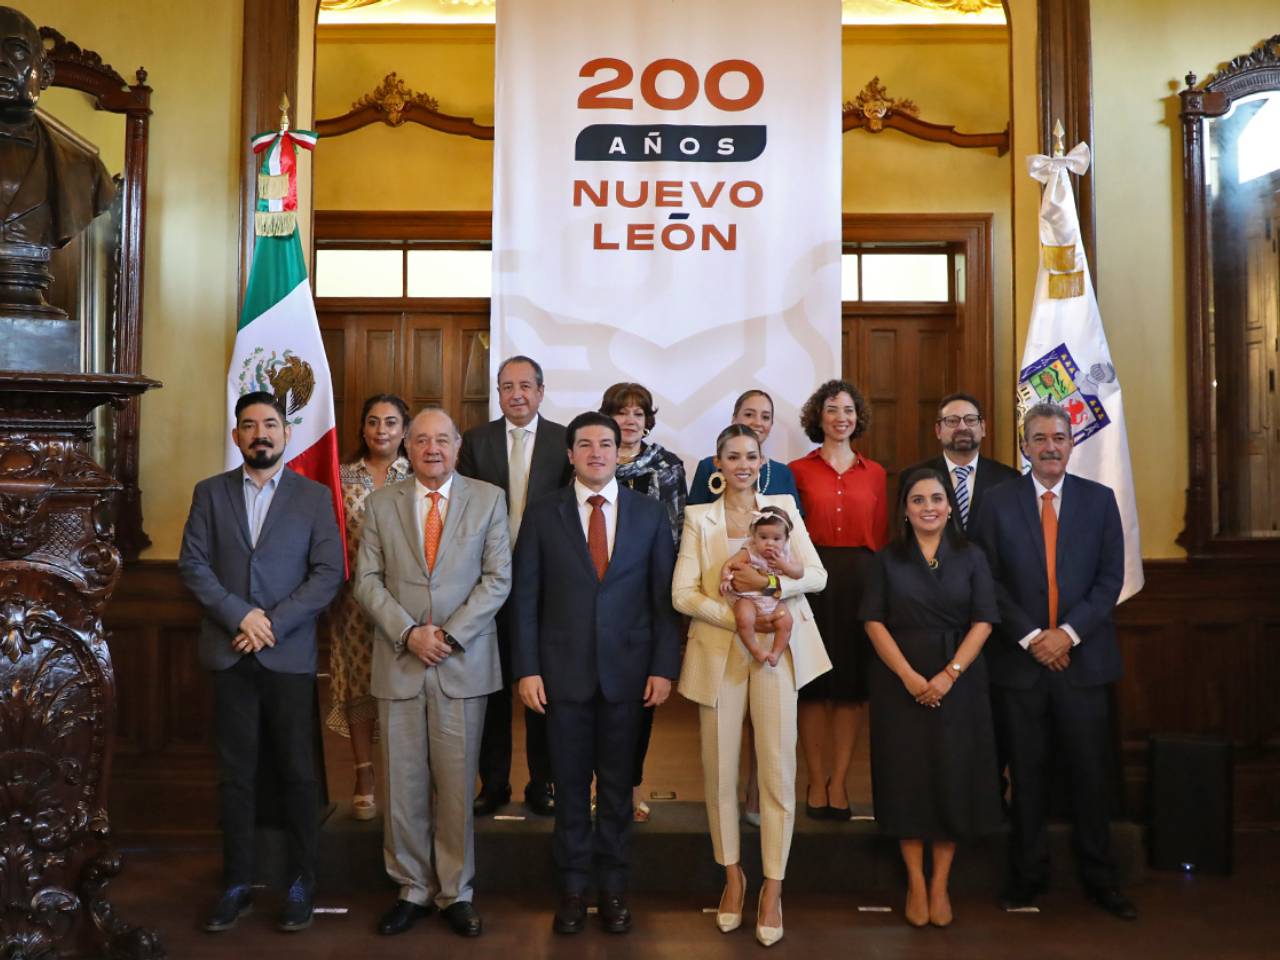 Noticias sobre la celebración de los 200 años de Nuevo León